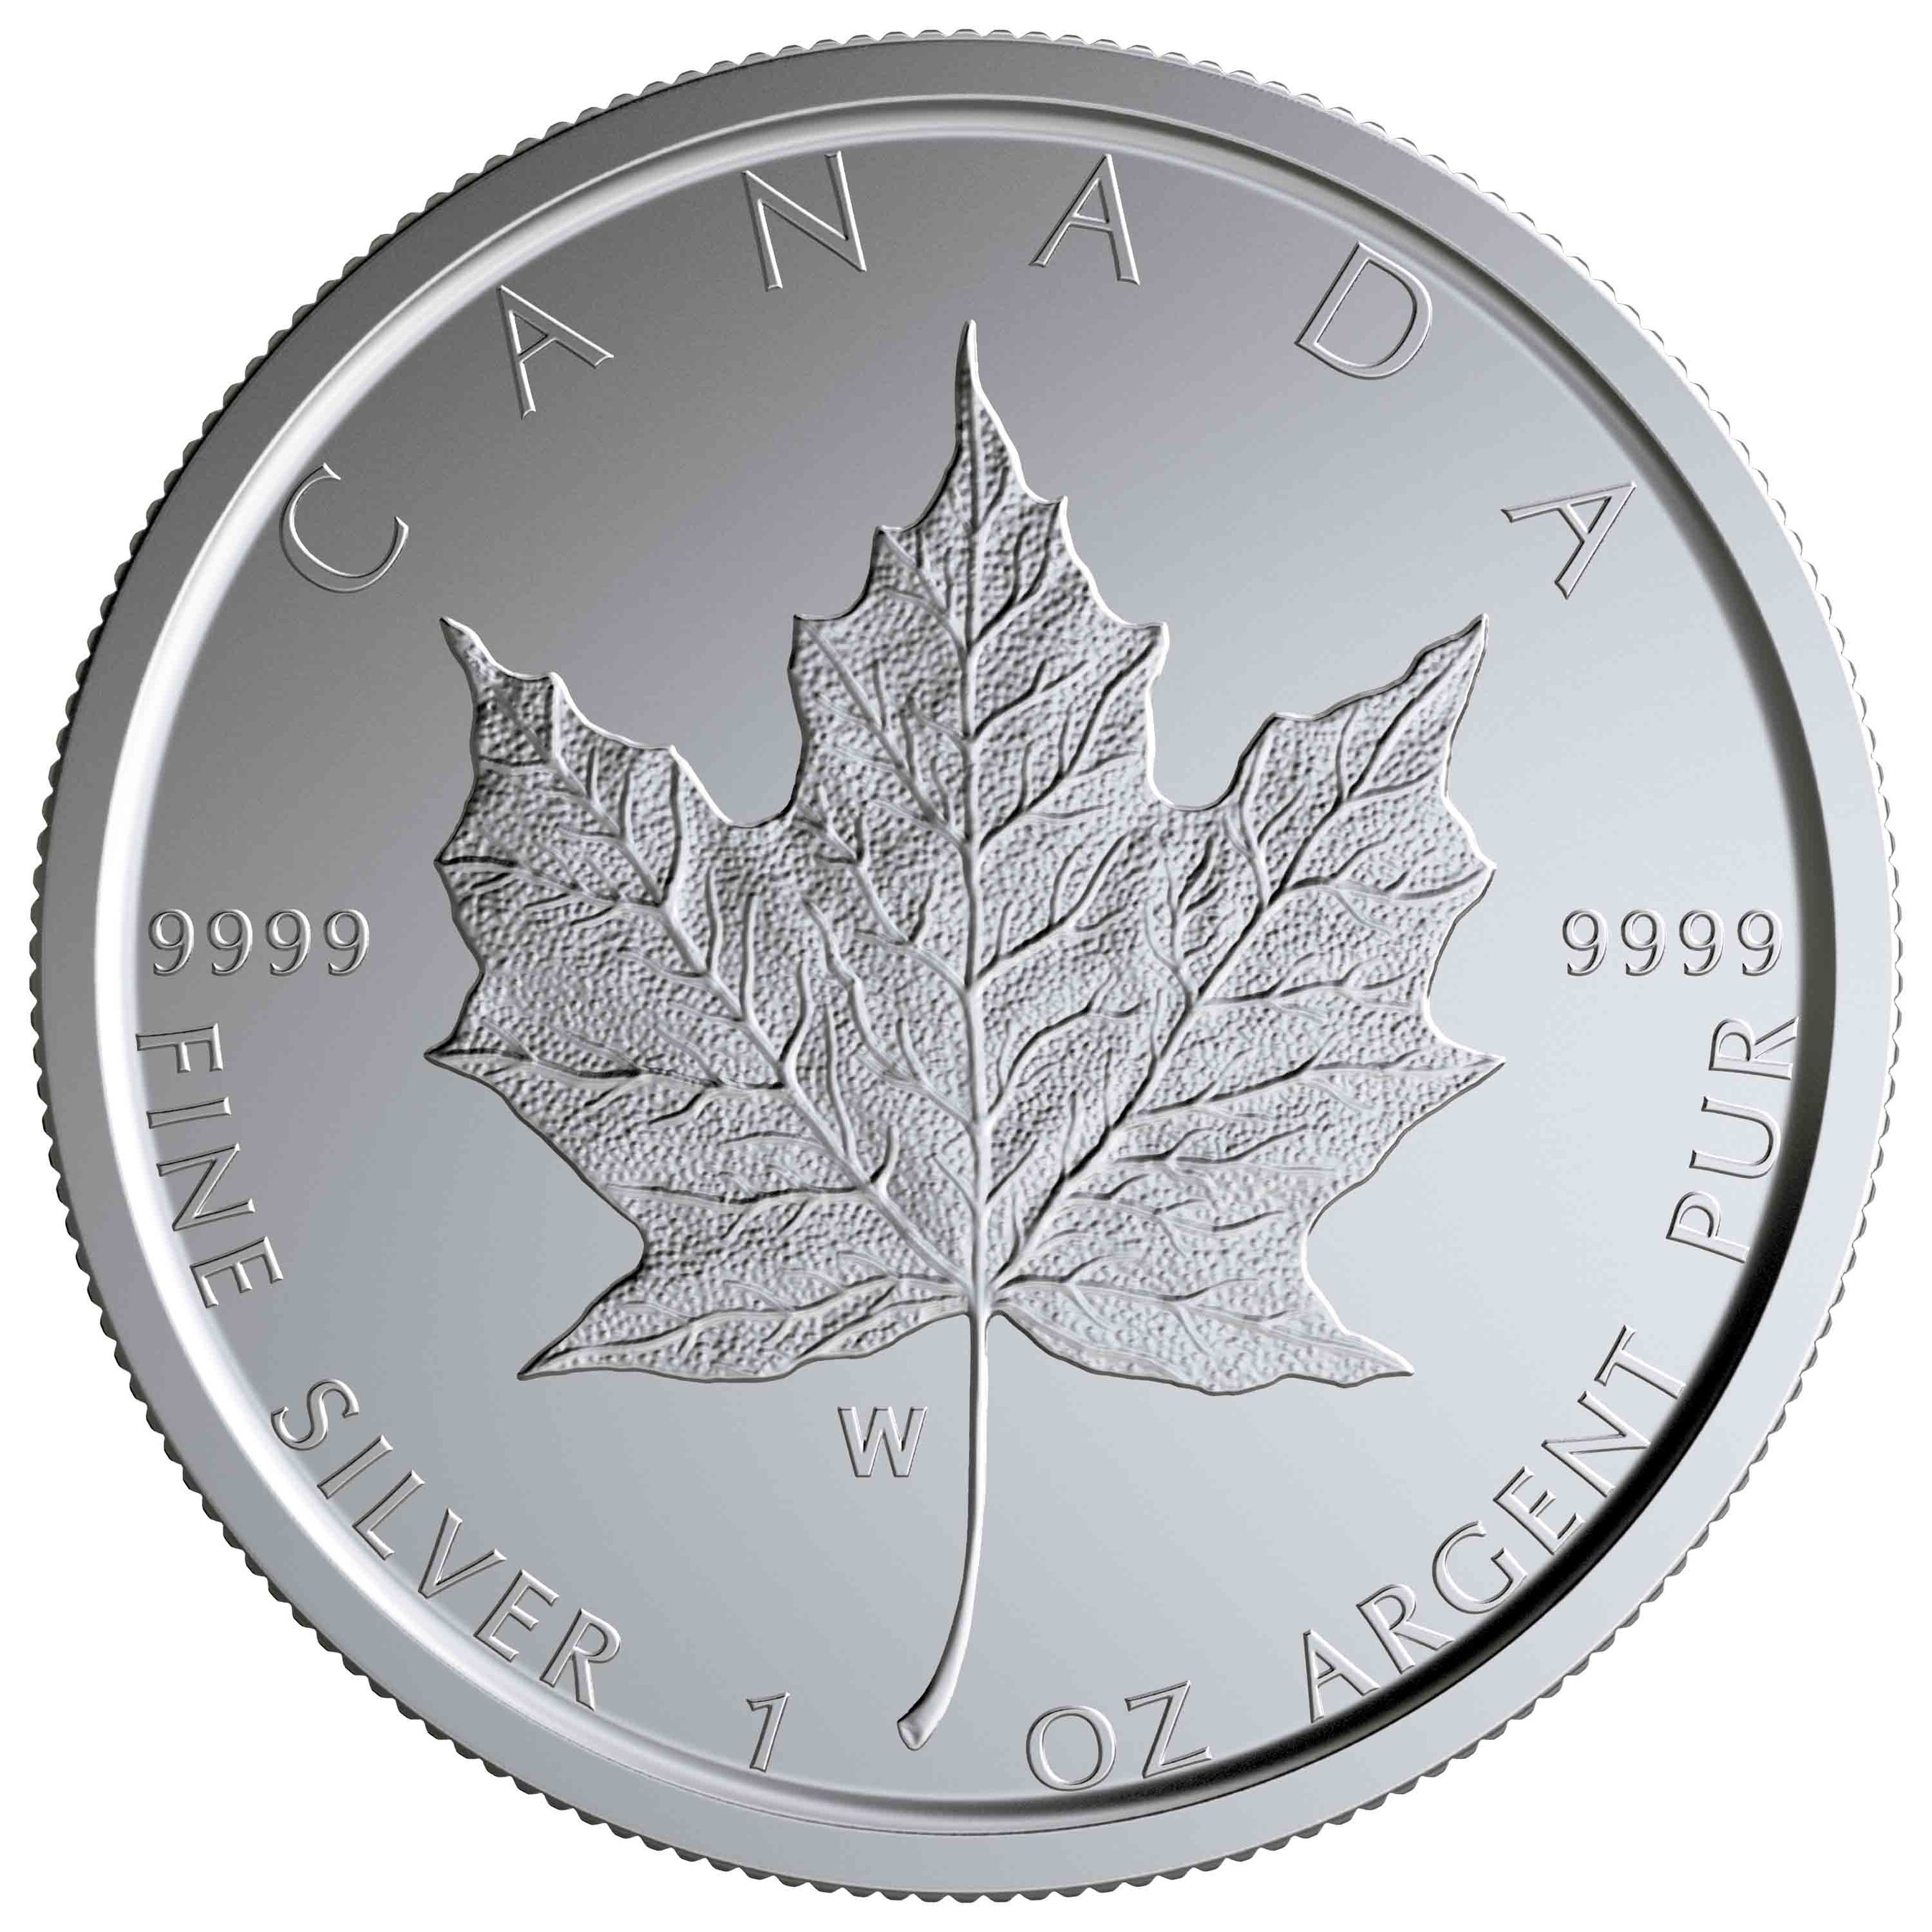 2019 Silver Maple Leaf with "W" Winnipeg Mint Mark - reverse side